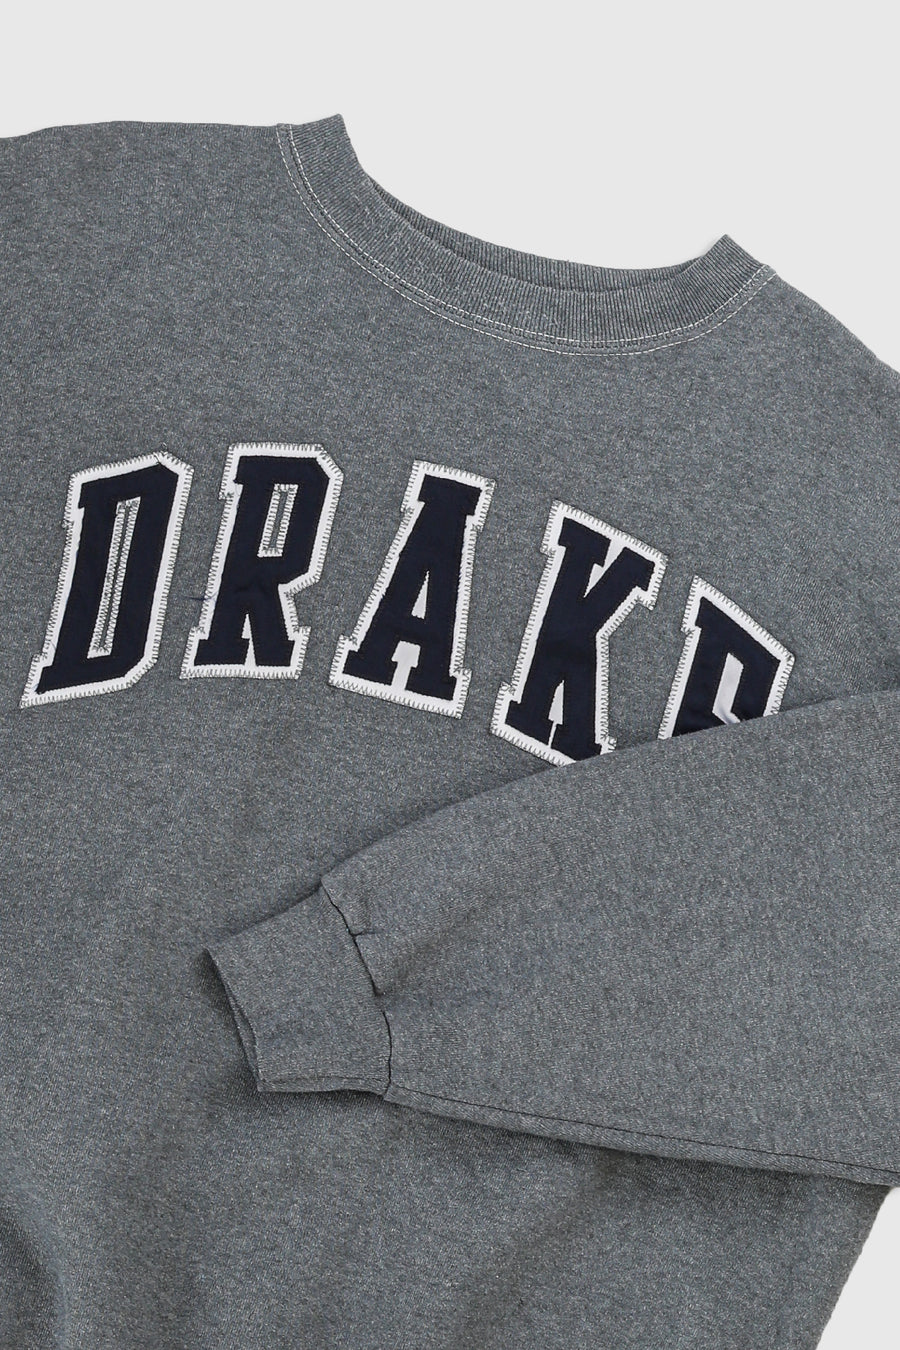 Vintage Drake Sweatshirt - XL